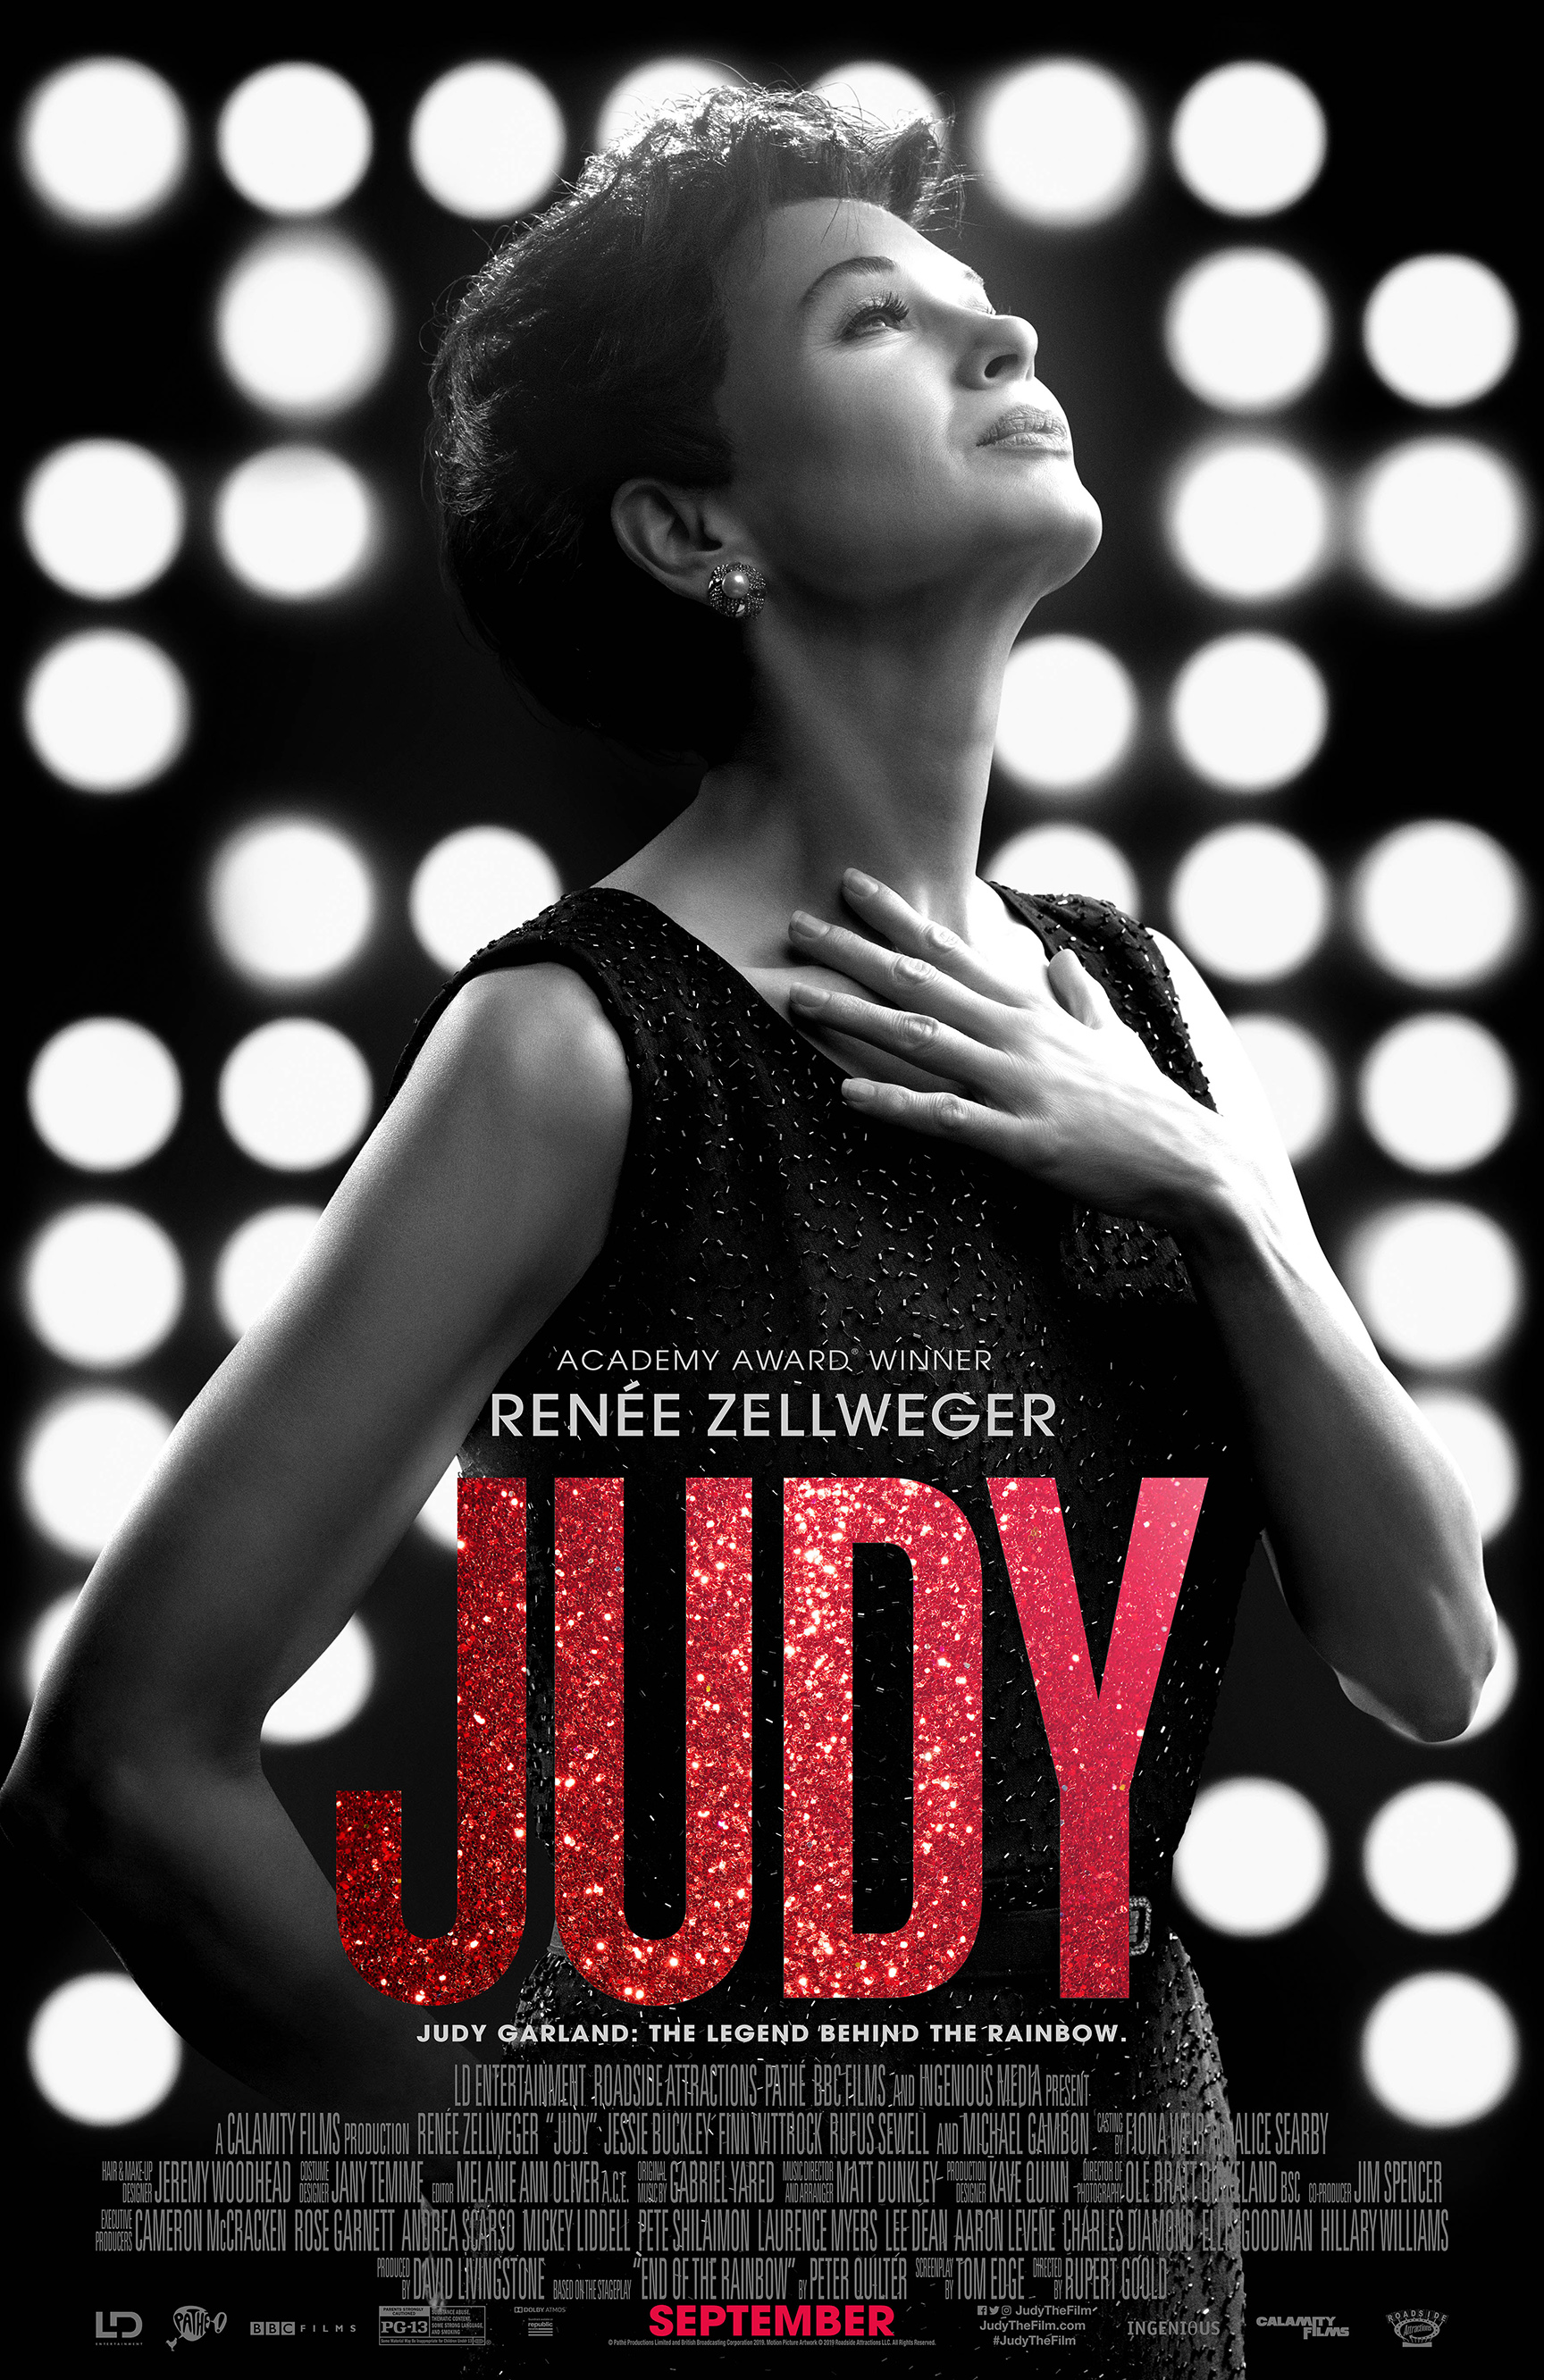 Judy (2019) จูดี้